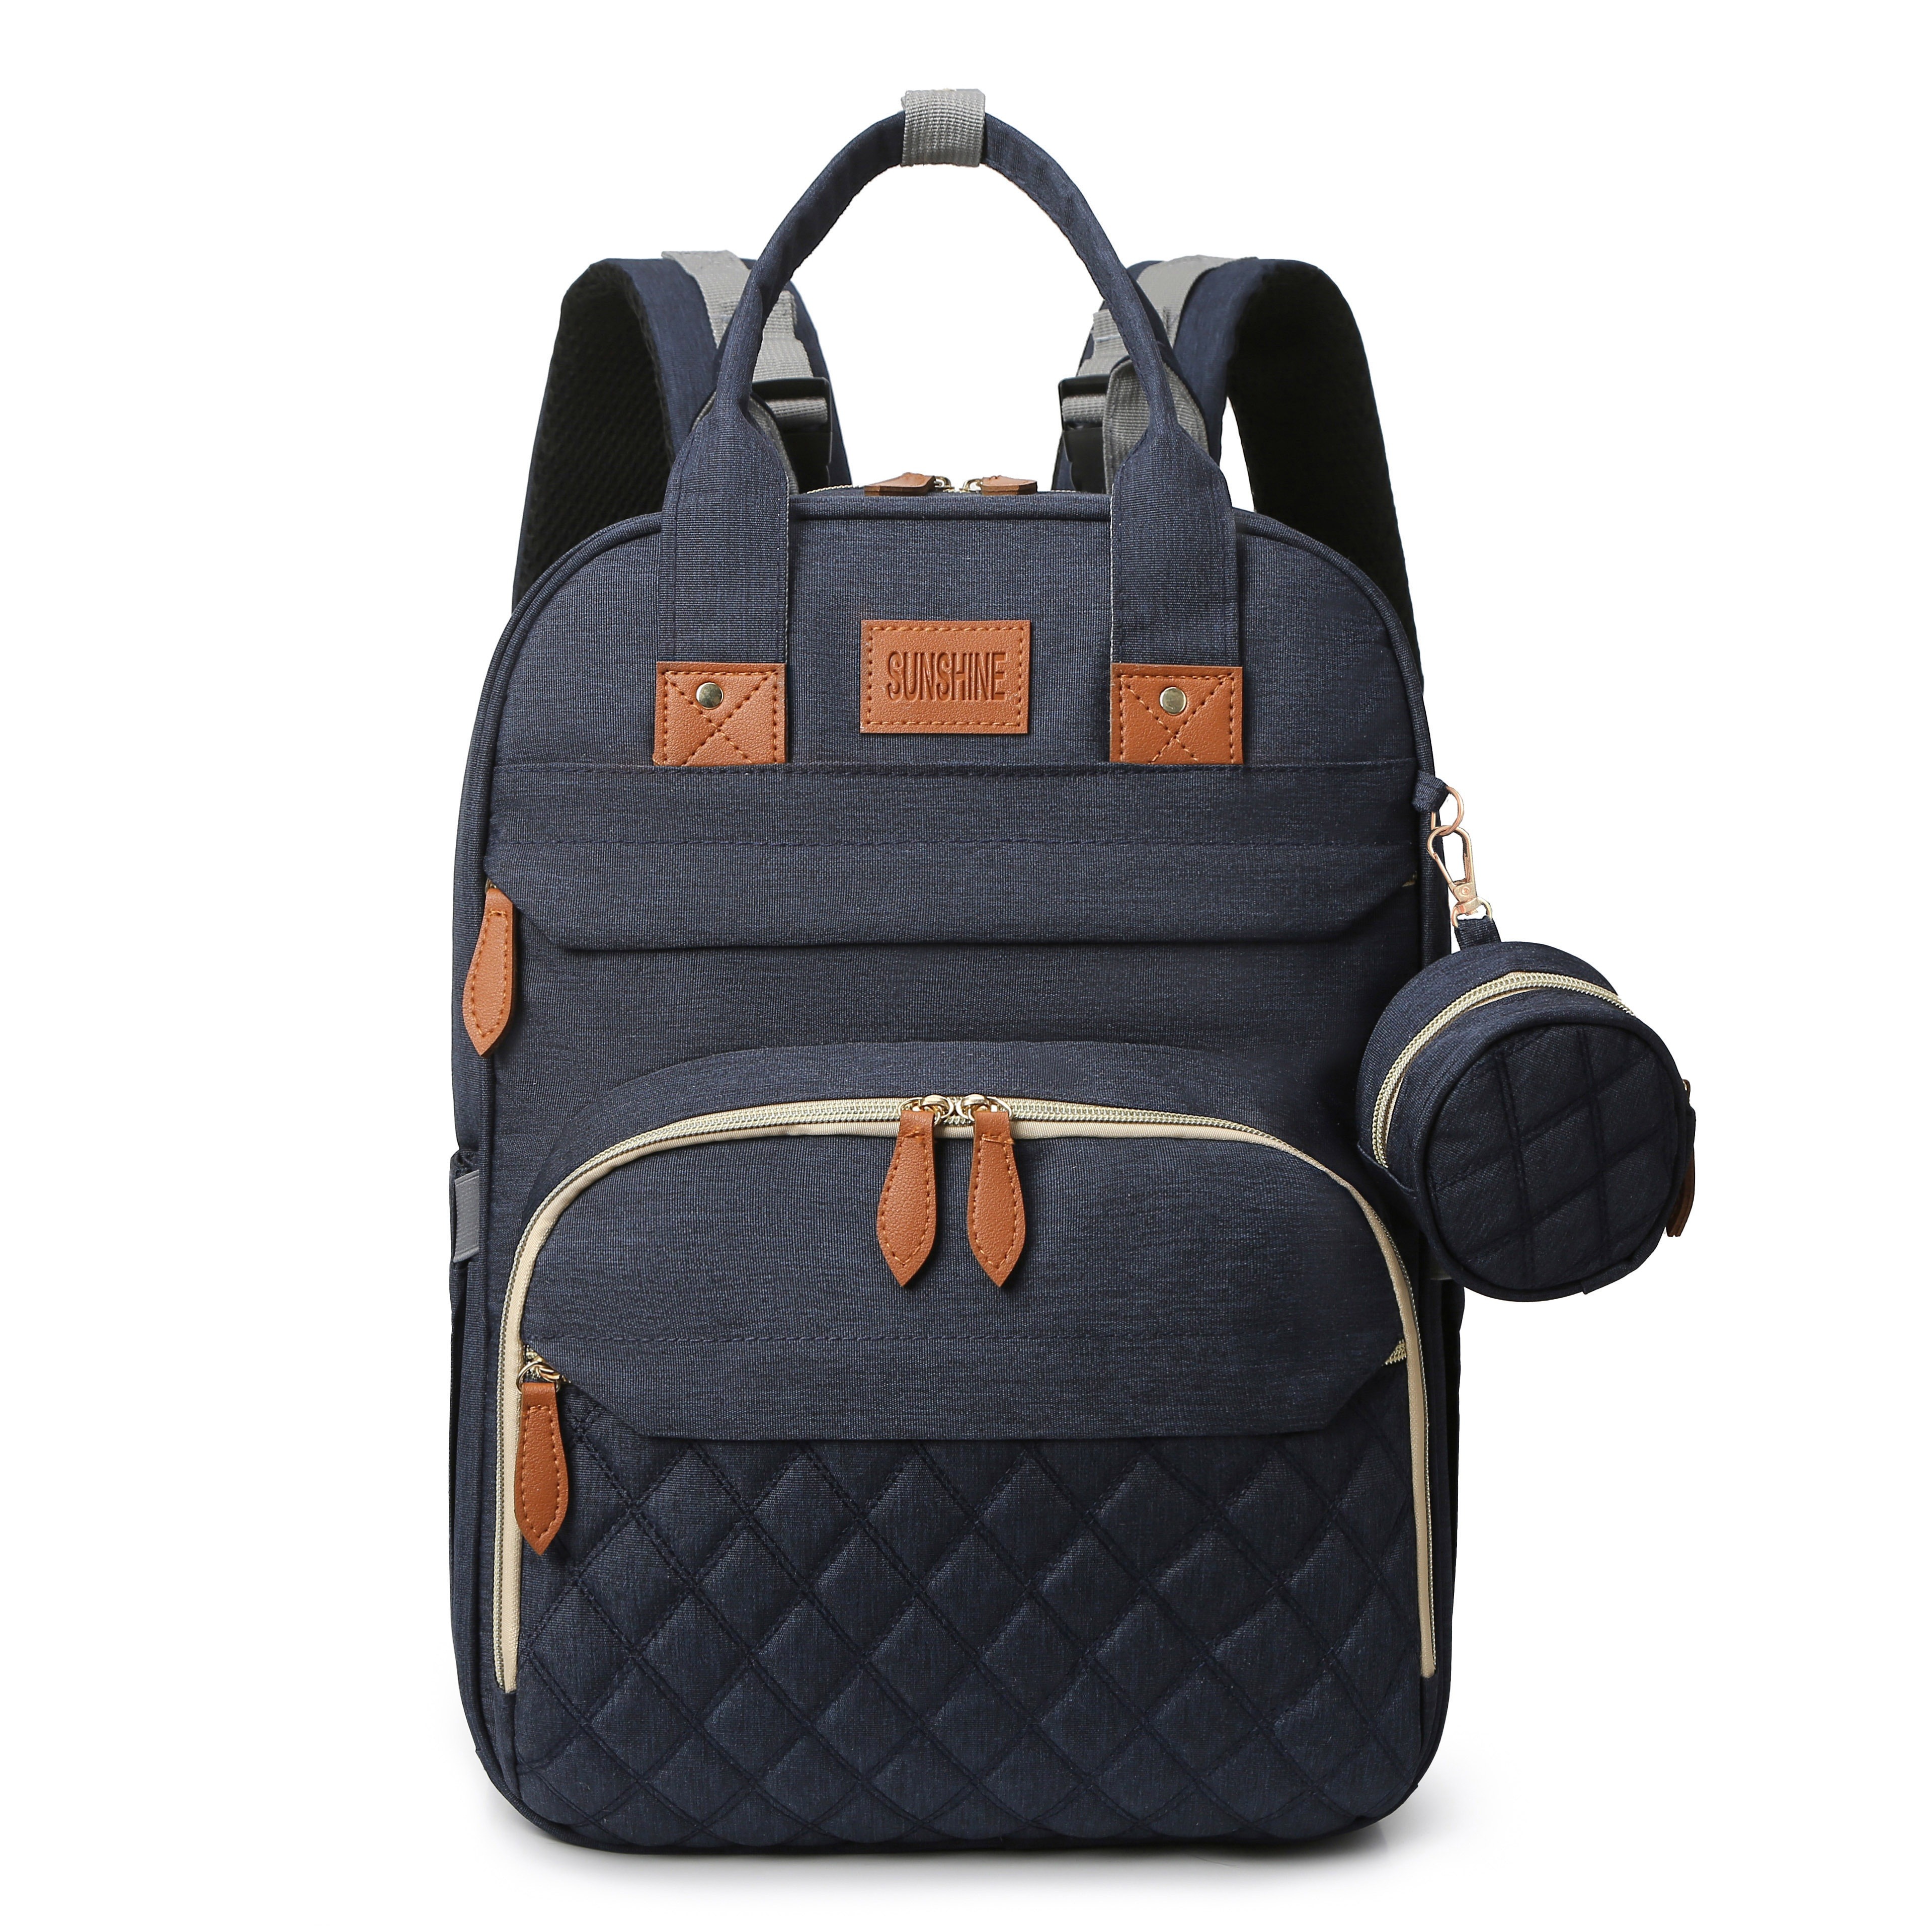 Mom's Women Diaper Bag Backpack - Best Diaper Bag Backpack for Women Mom  Gift, Affordable & Stylish Diaper Backpack Bag, UPPER